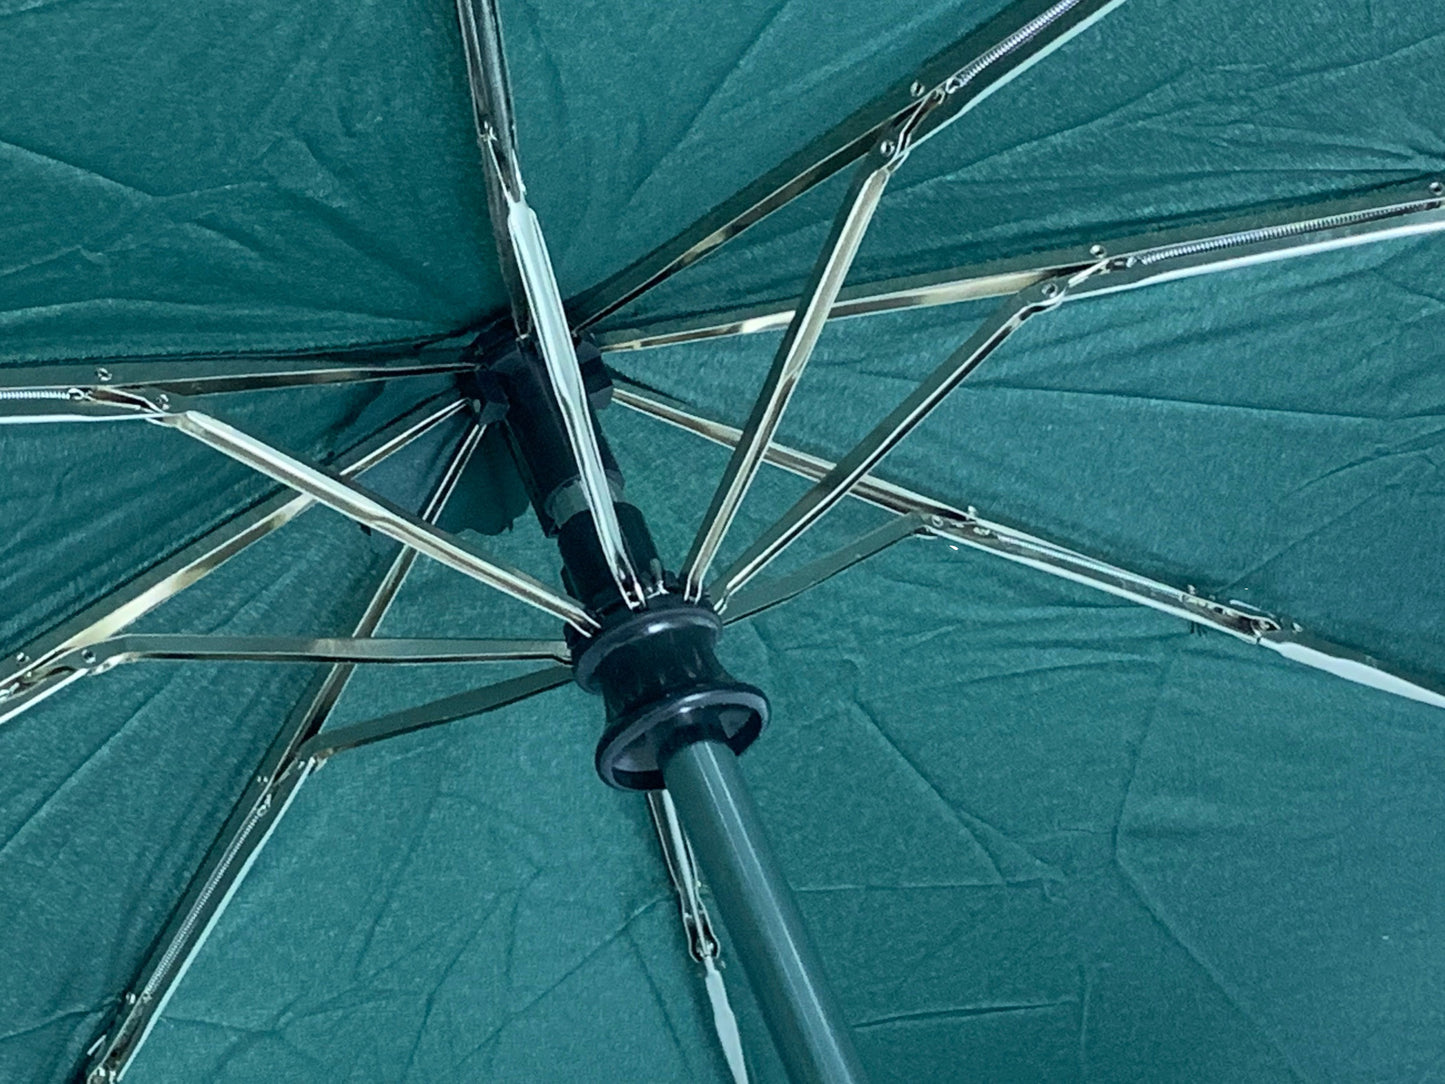 Πράσινο σκούρο ομπρέλα βροχής, αυτόματη, twinmatic, ακτίνες ανθρακόνημα.